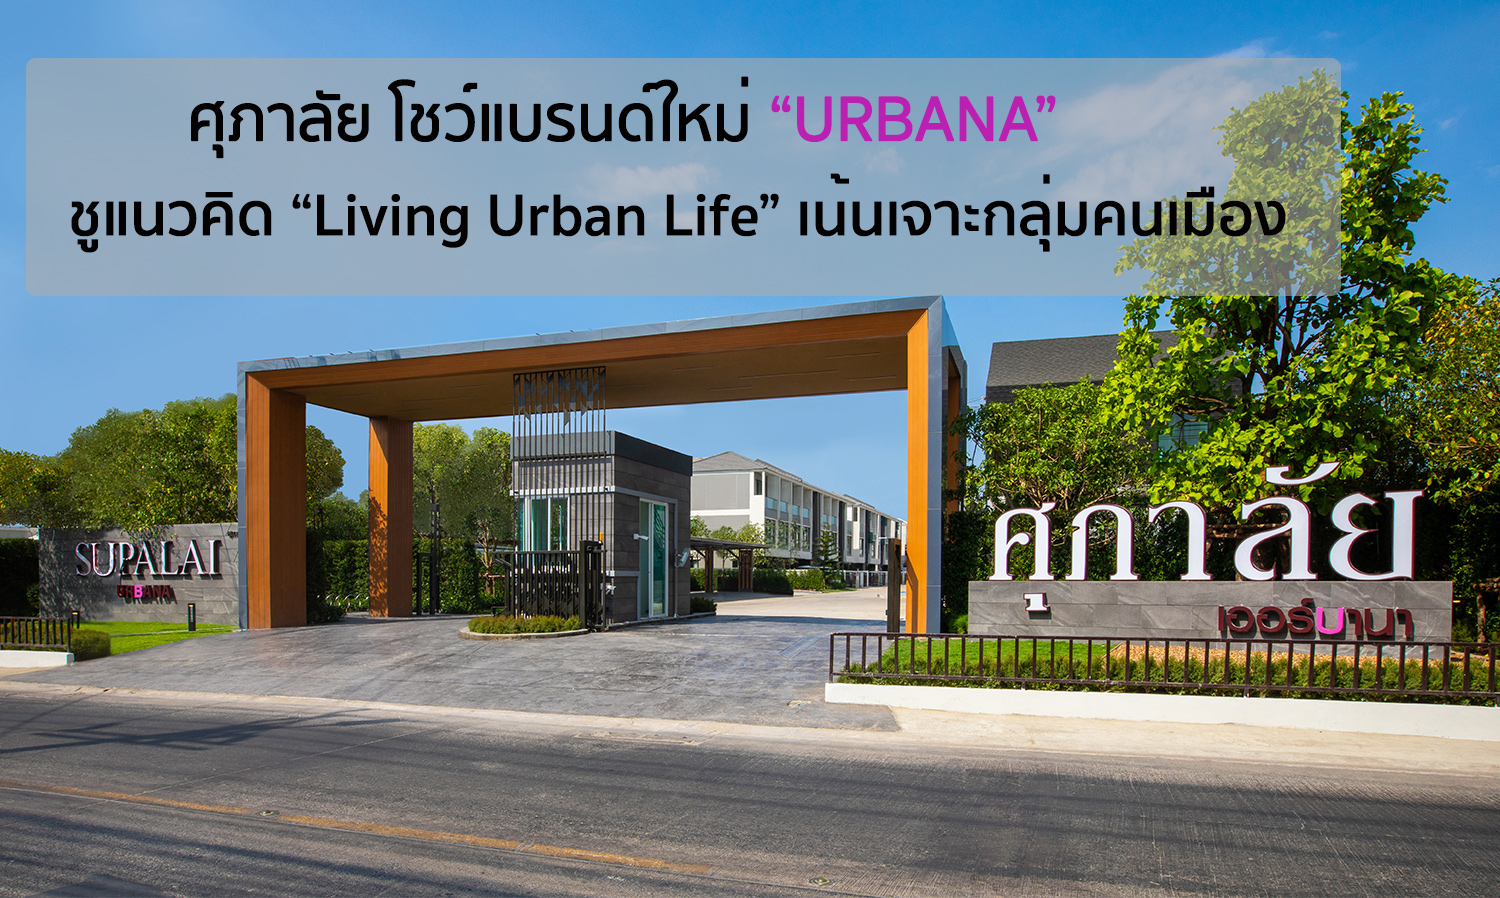 ศุภาลัย โชว์แบรนด์ใหม่ “URBANA” ชูแนวคิด“Living Urban Life” เน้นเจาะกลุ่มคนเมือง